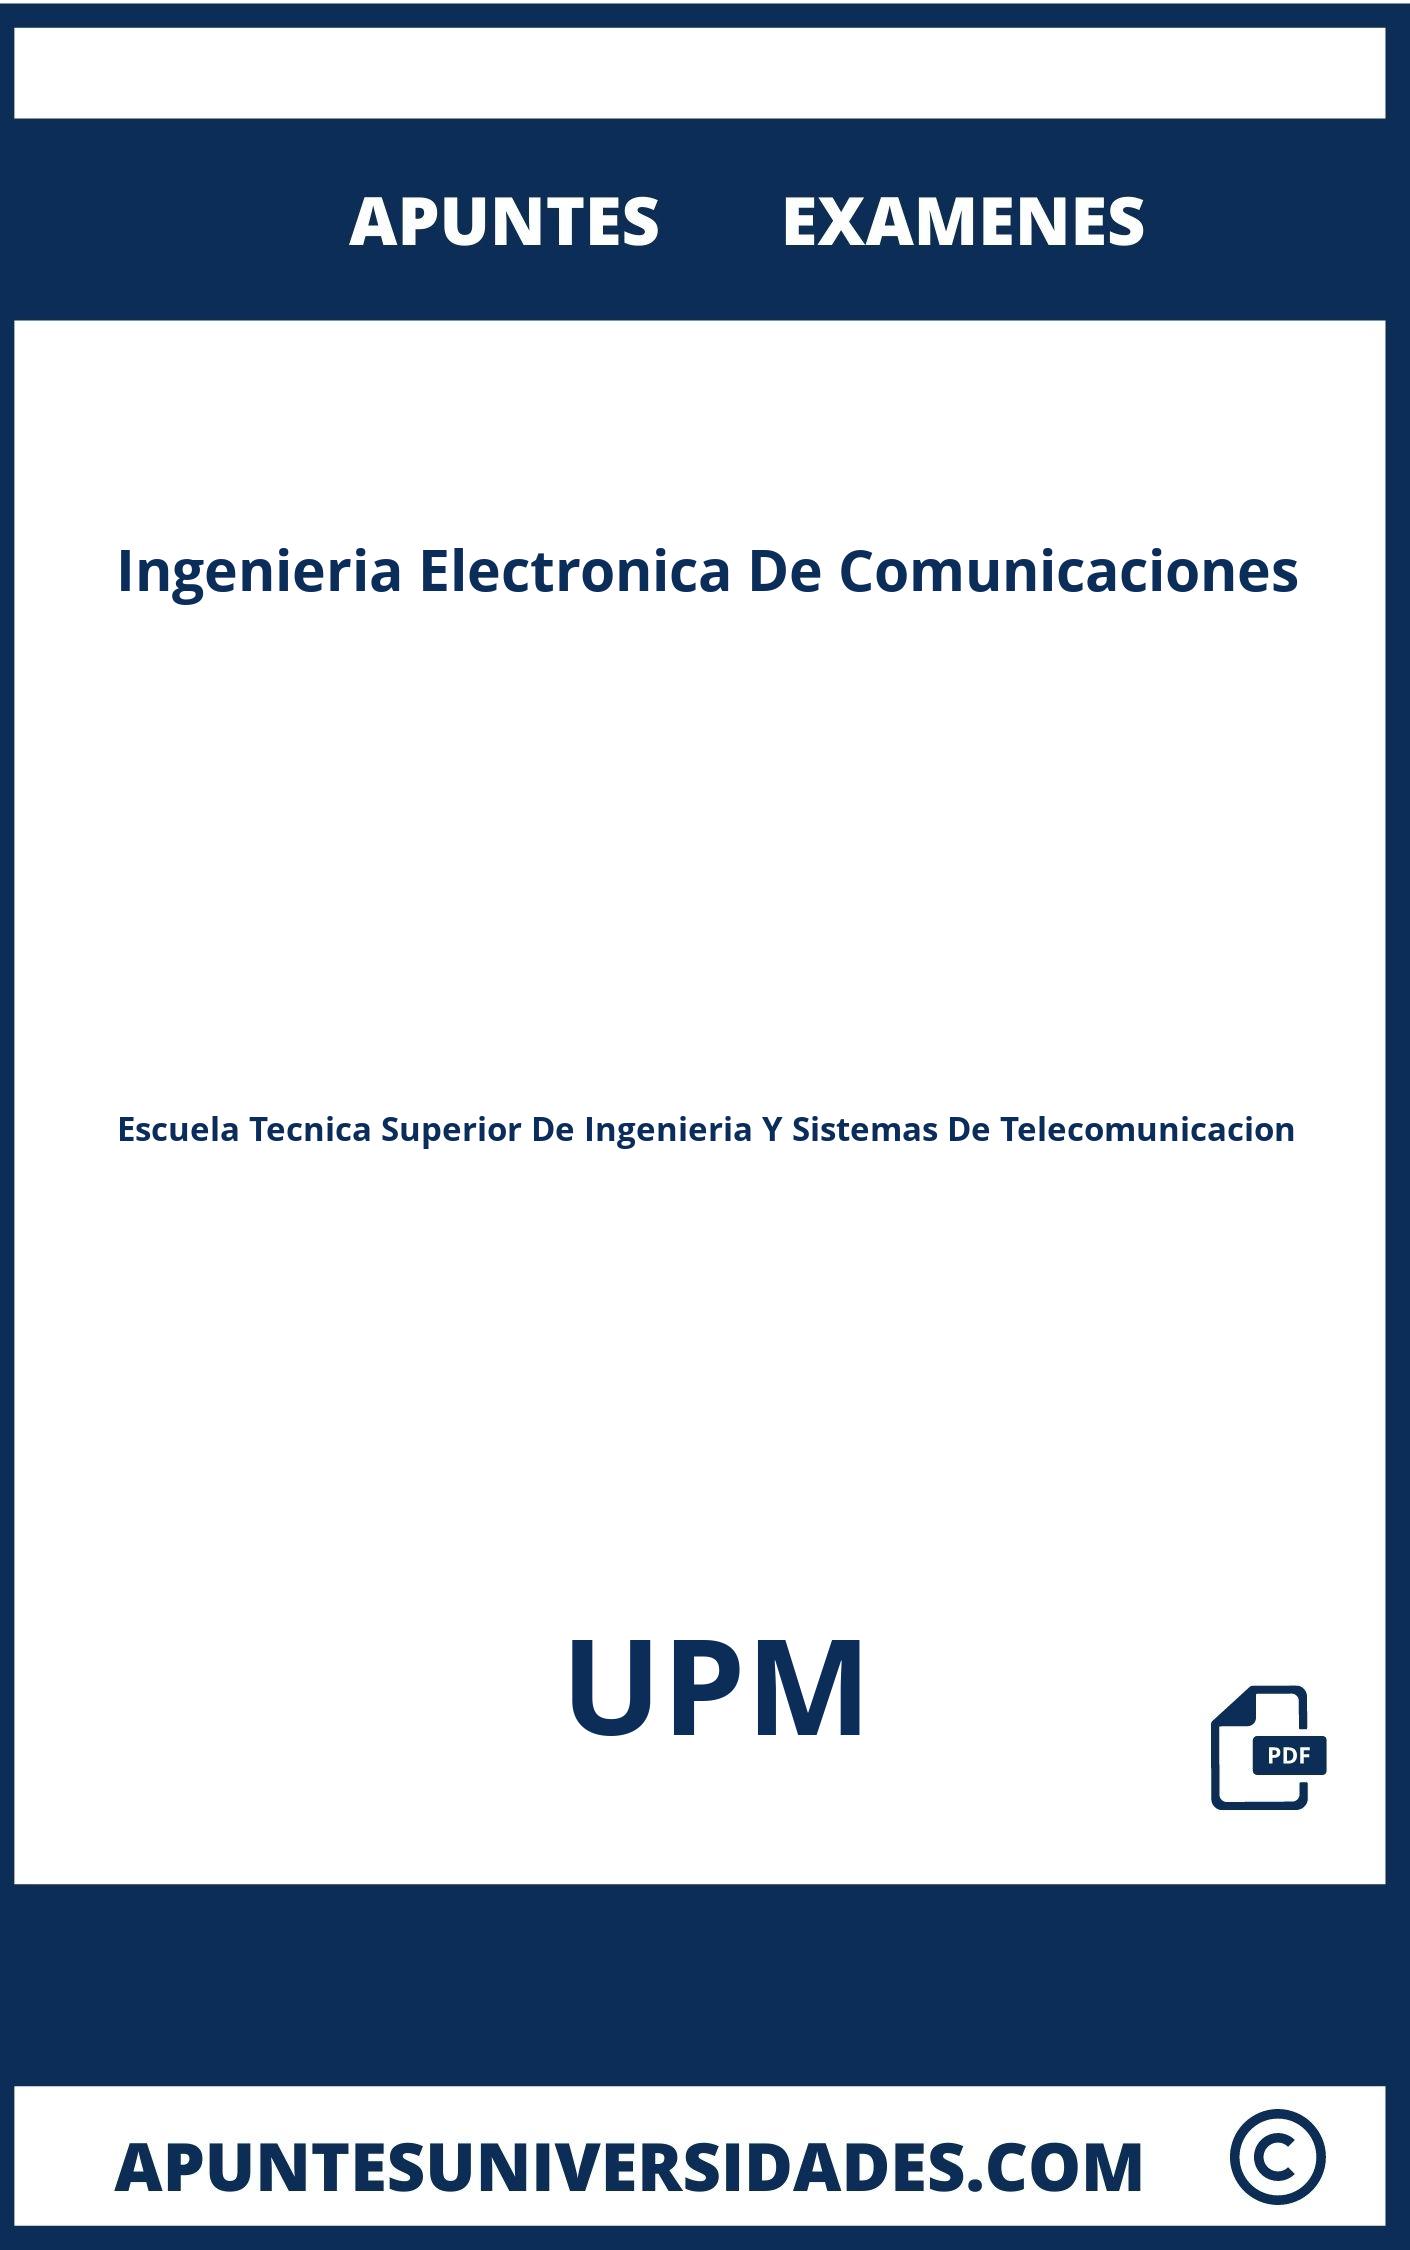 Examenes y Apuntes Ingenieria Electronica De Comunicaciones UPM